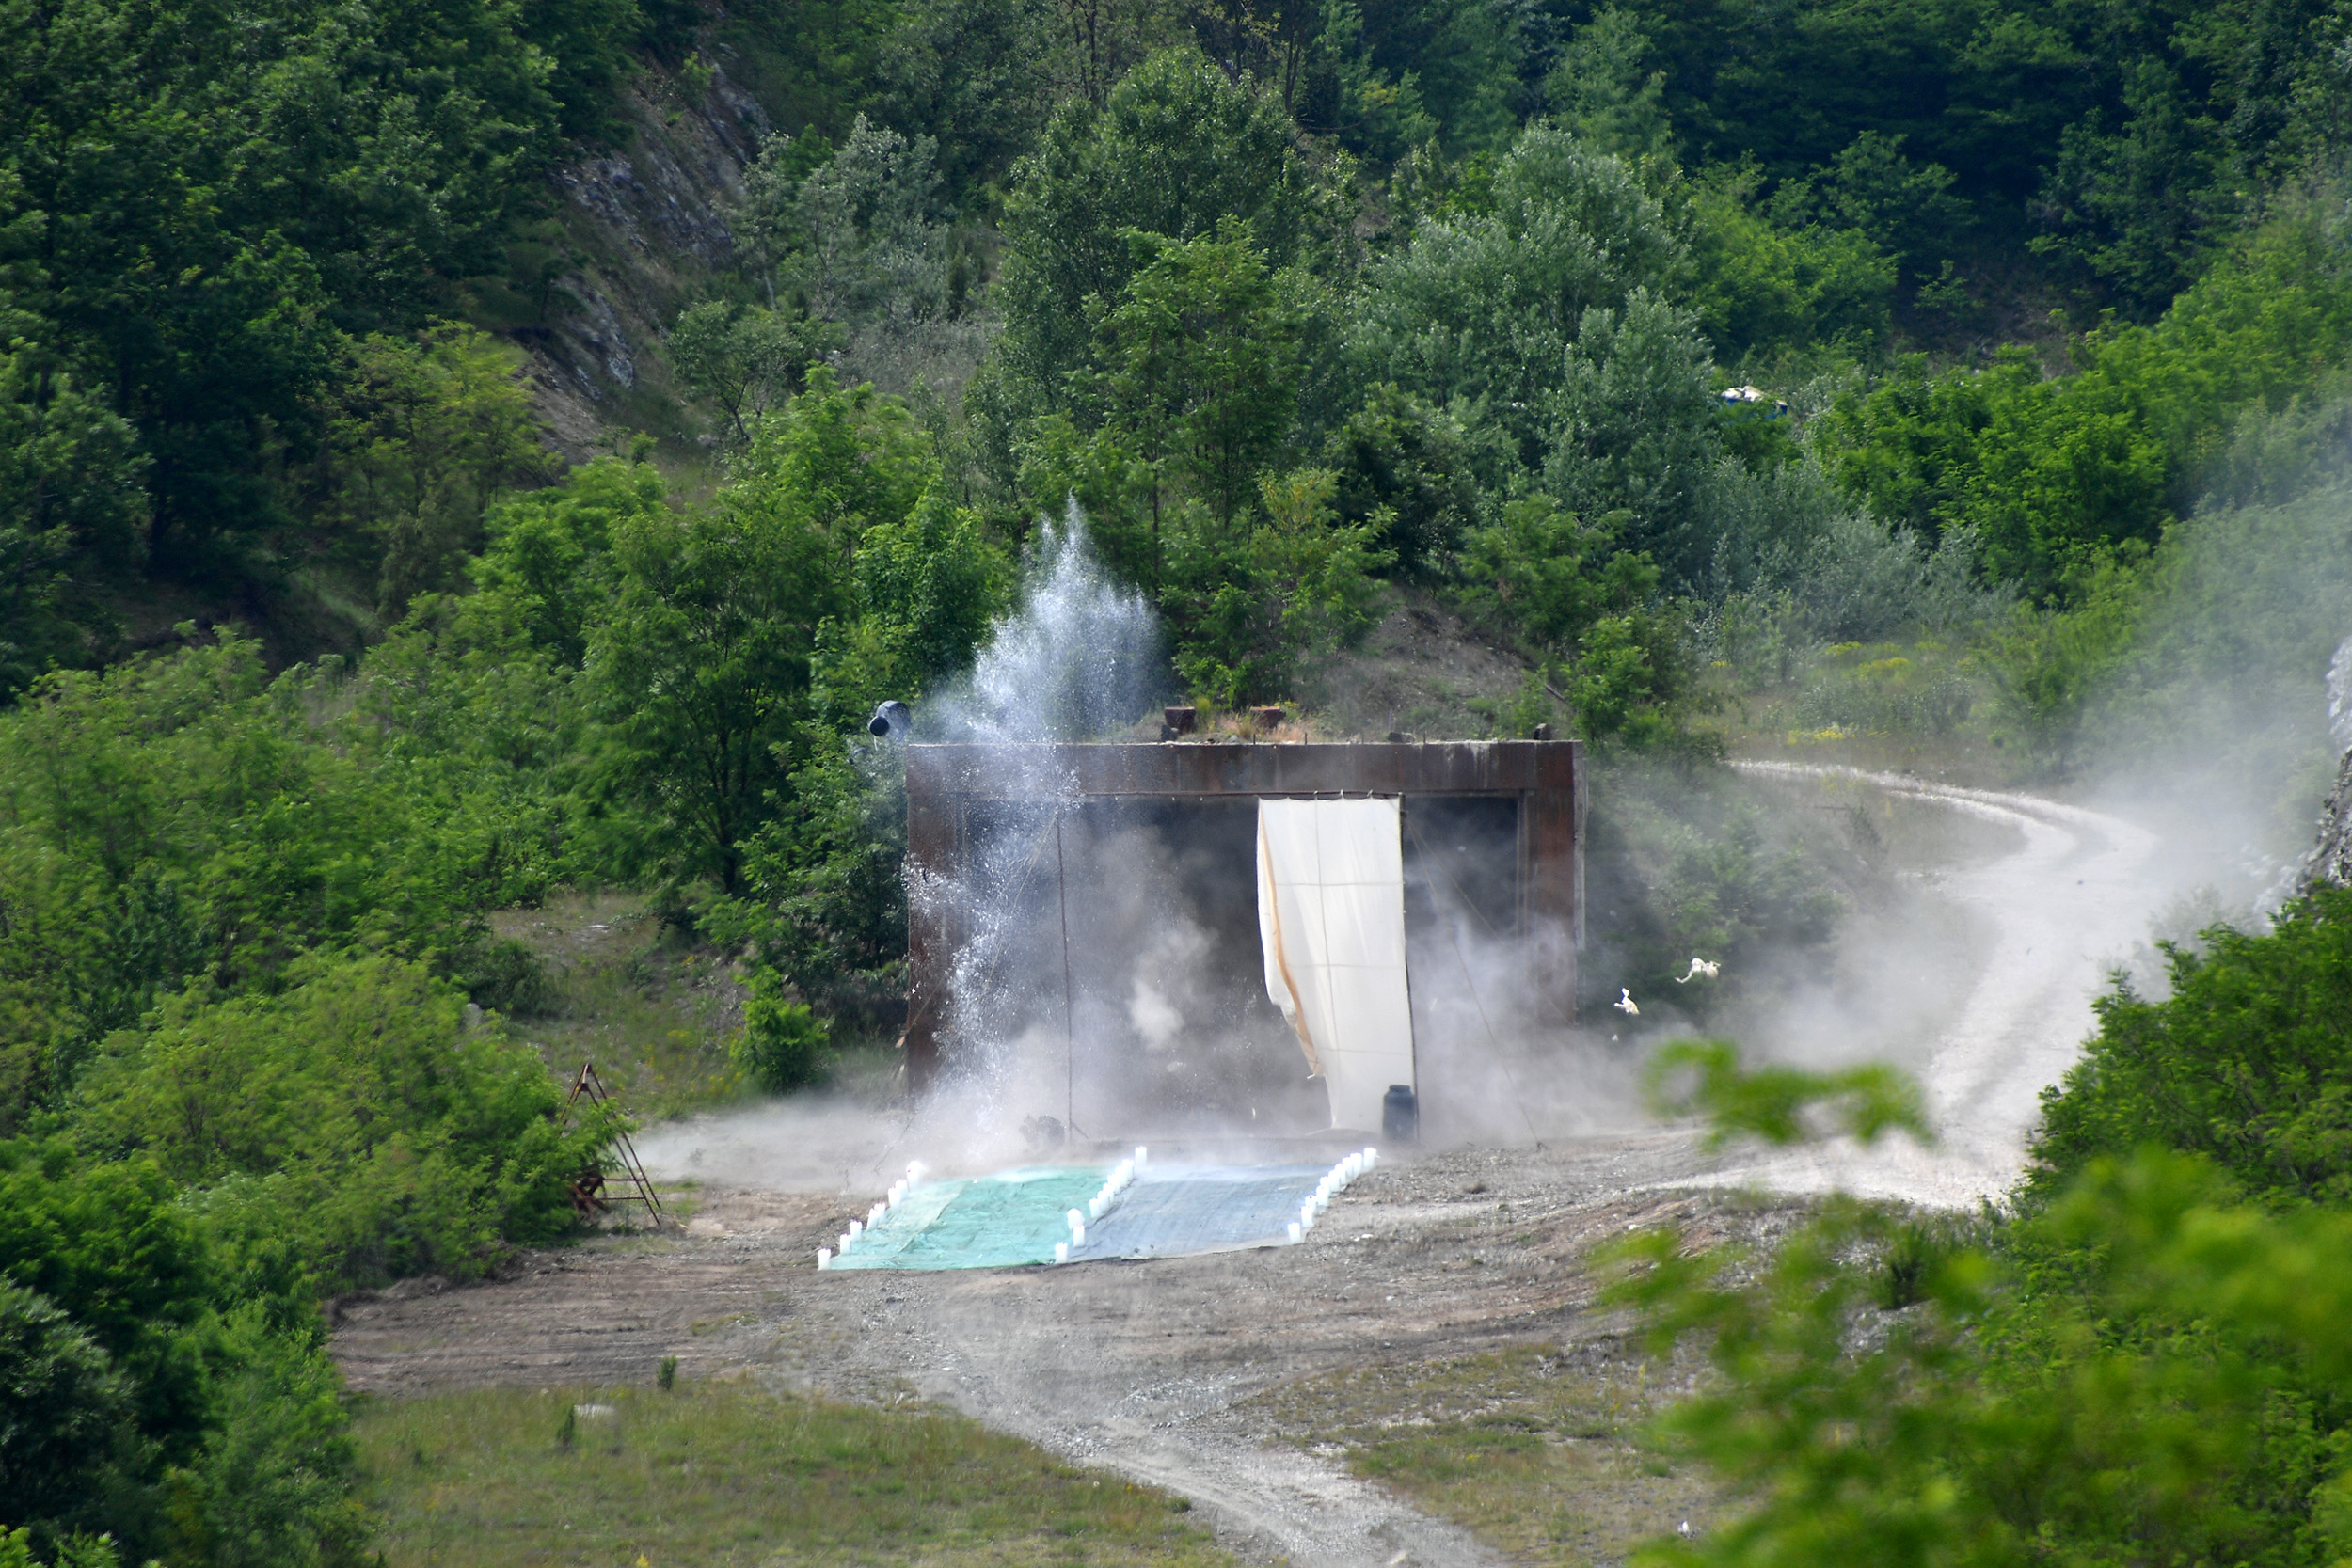 Serbia Tests PASARS 40mm Self-Propelled Anti-Aircraft Gun